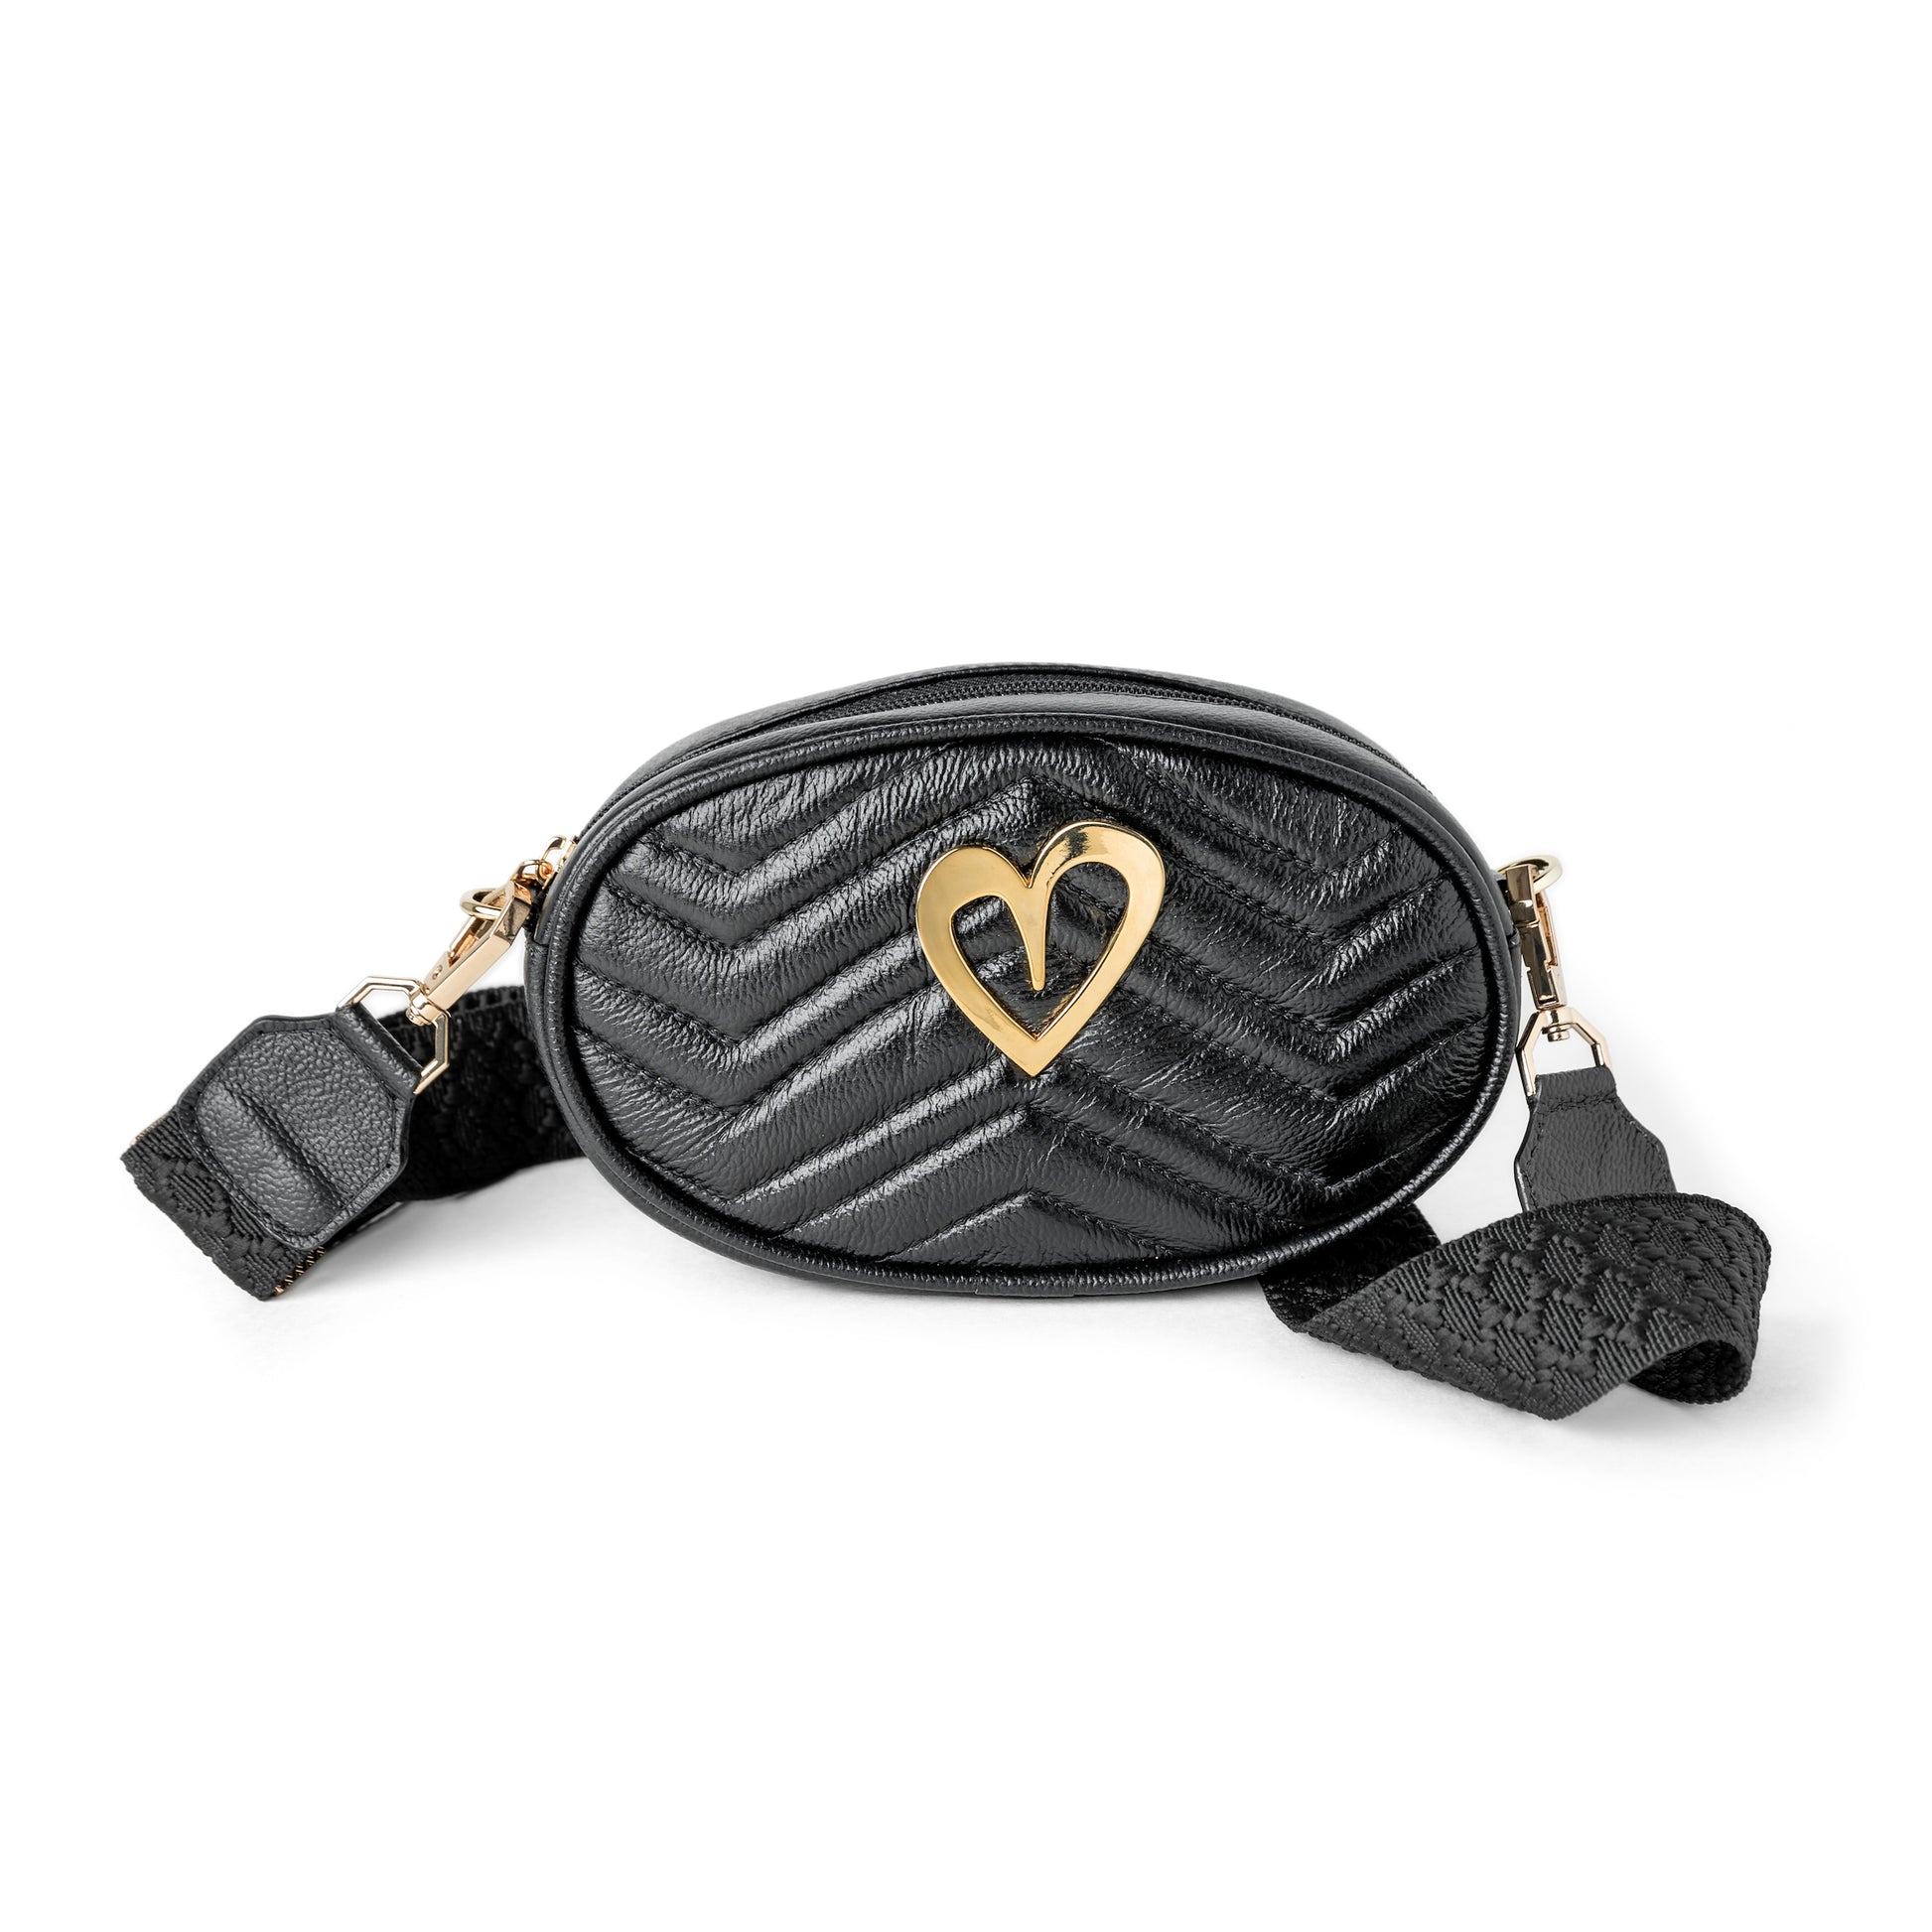 Pamela Multi Bag - Black by Nataly Mendez, Genuine Leather Adjustable 5" x 7" Gold Heart Medida del cinturón: 42.5” Incluye correa y strap.